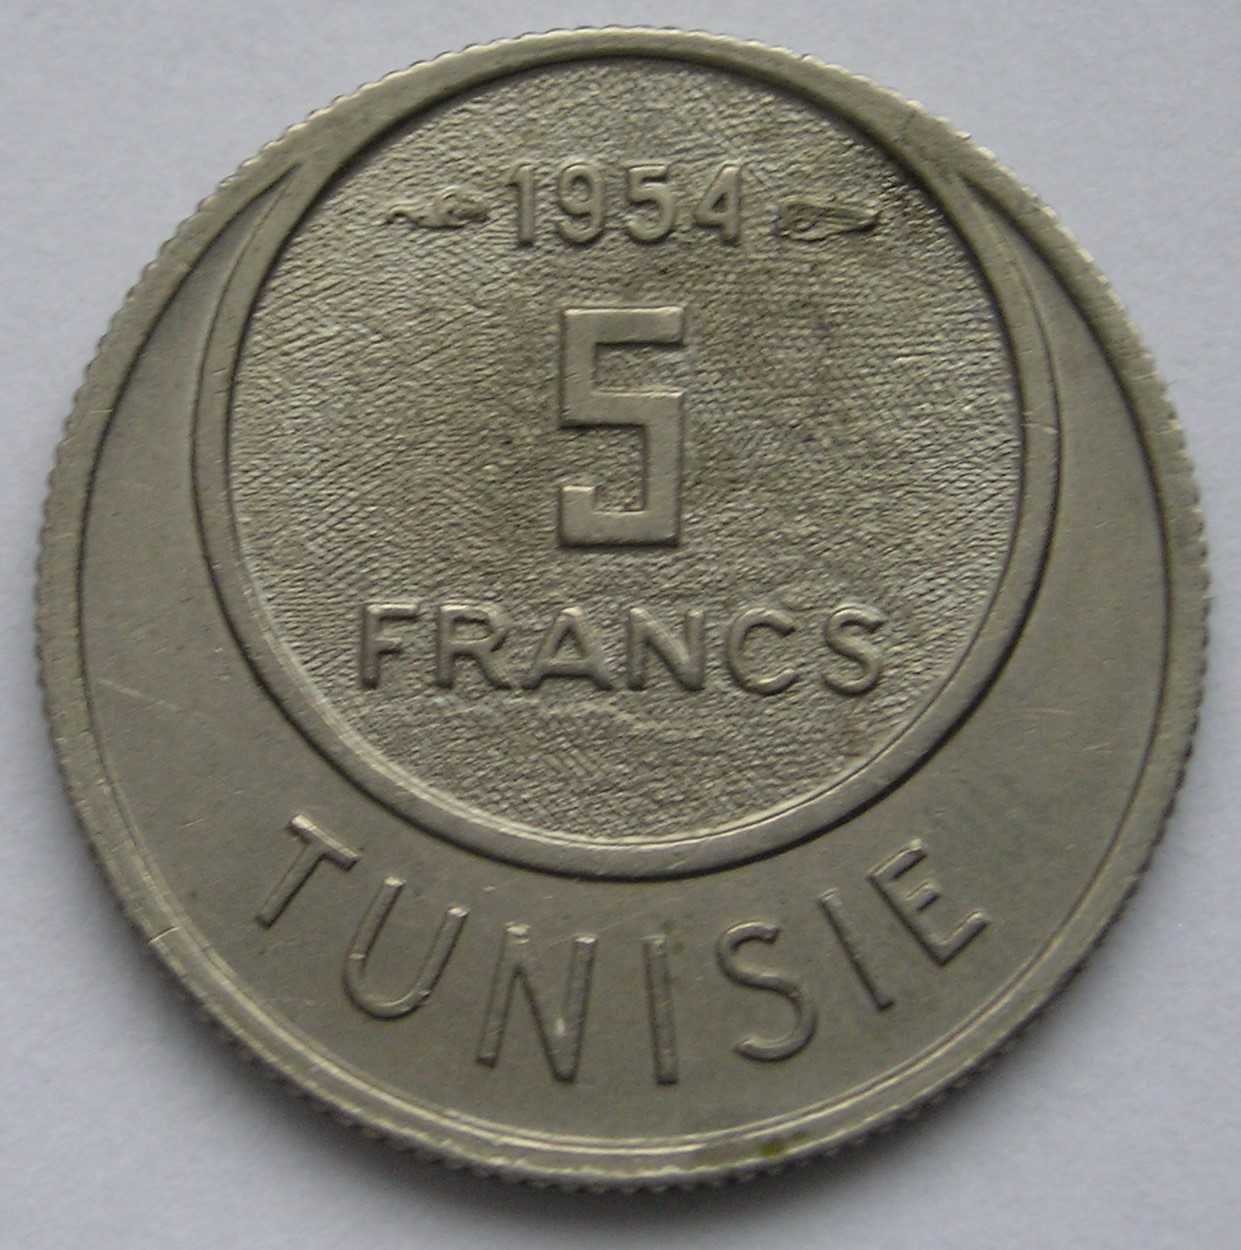 Tunezja 5 franków 1954 - stan 1/2